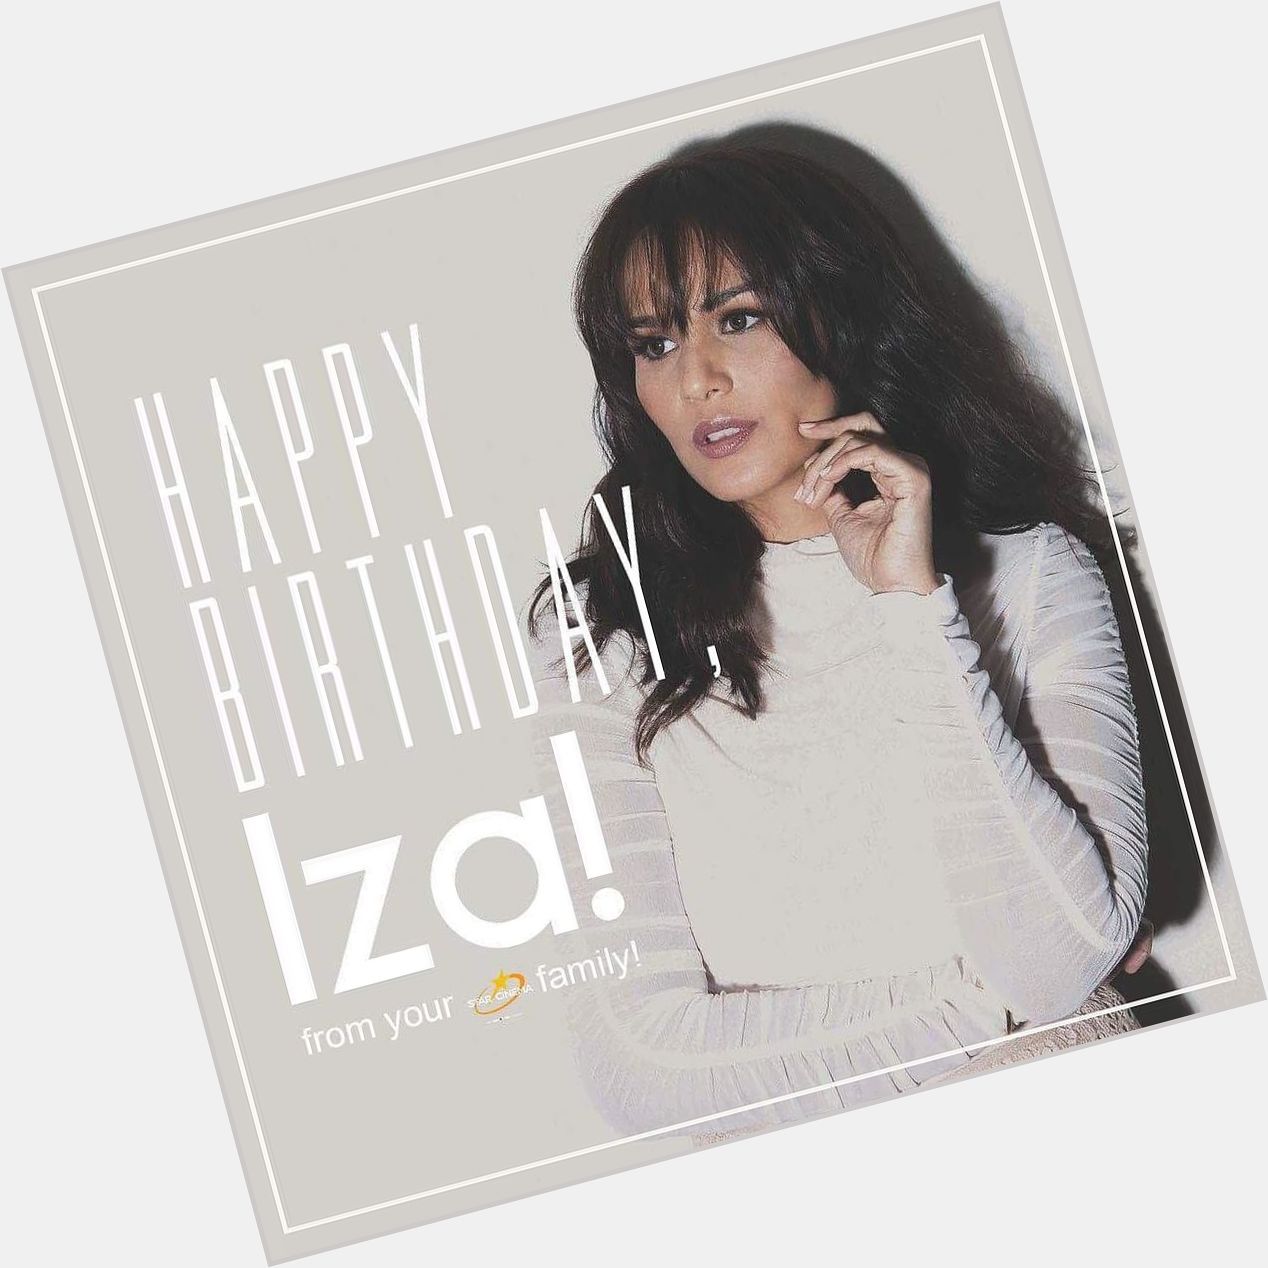 Happy birthday to the always classy Iza Calzado! Enjoy your day! 